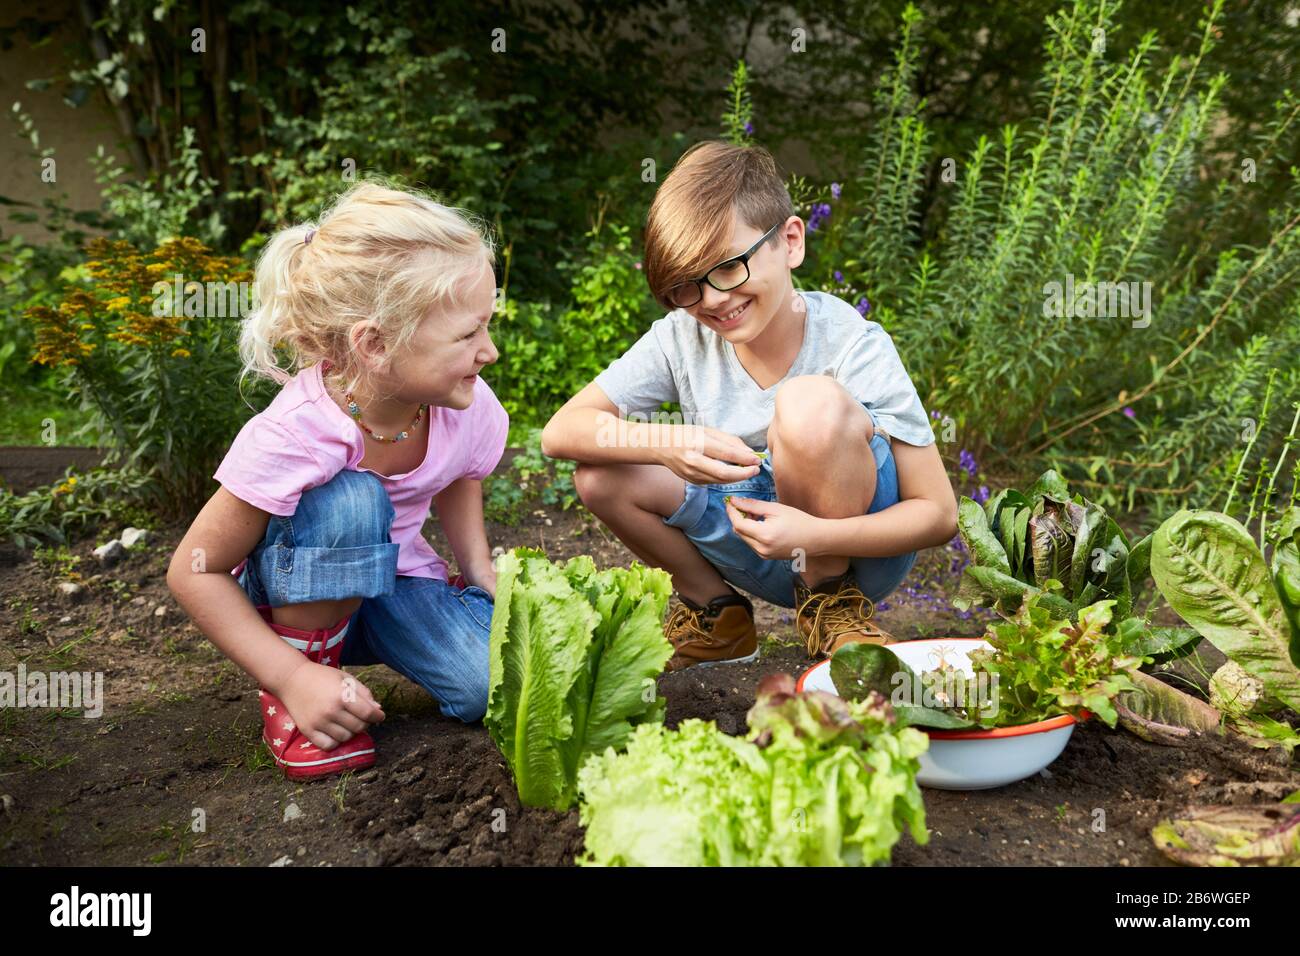 Enfants enquêtant sur la nourriture. Série: Soupe de salade de cuisson, salade de récolte. Apprentissage selon le principe de la pédagogie Reggio, compréhension et découverte ludiques. Allemagne Banque D'Images